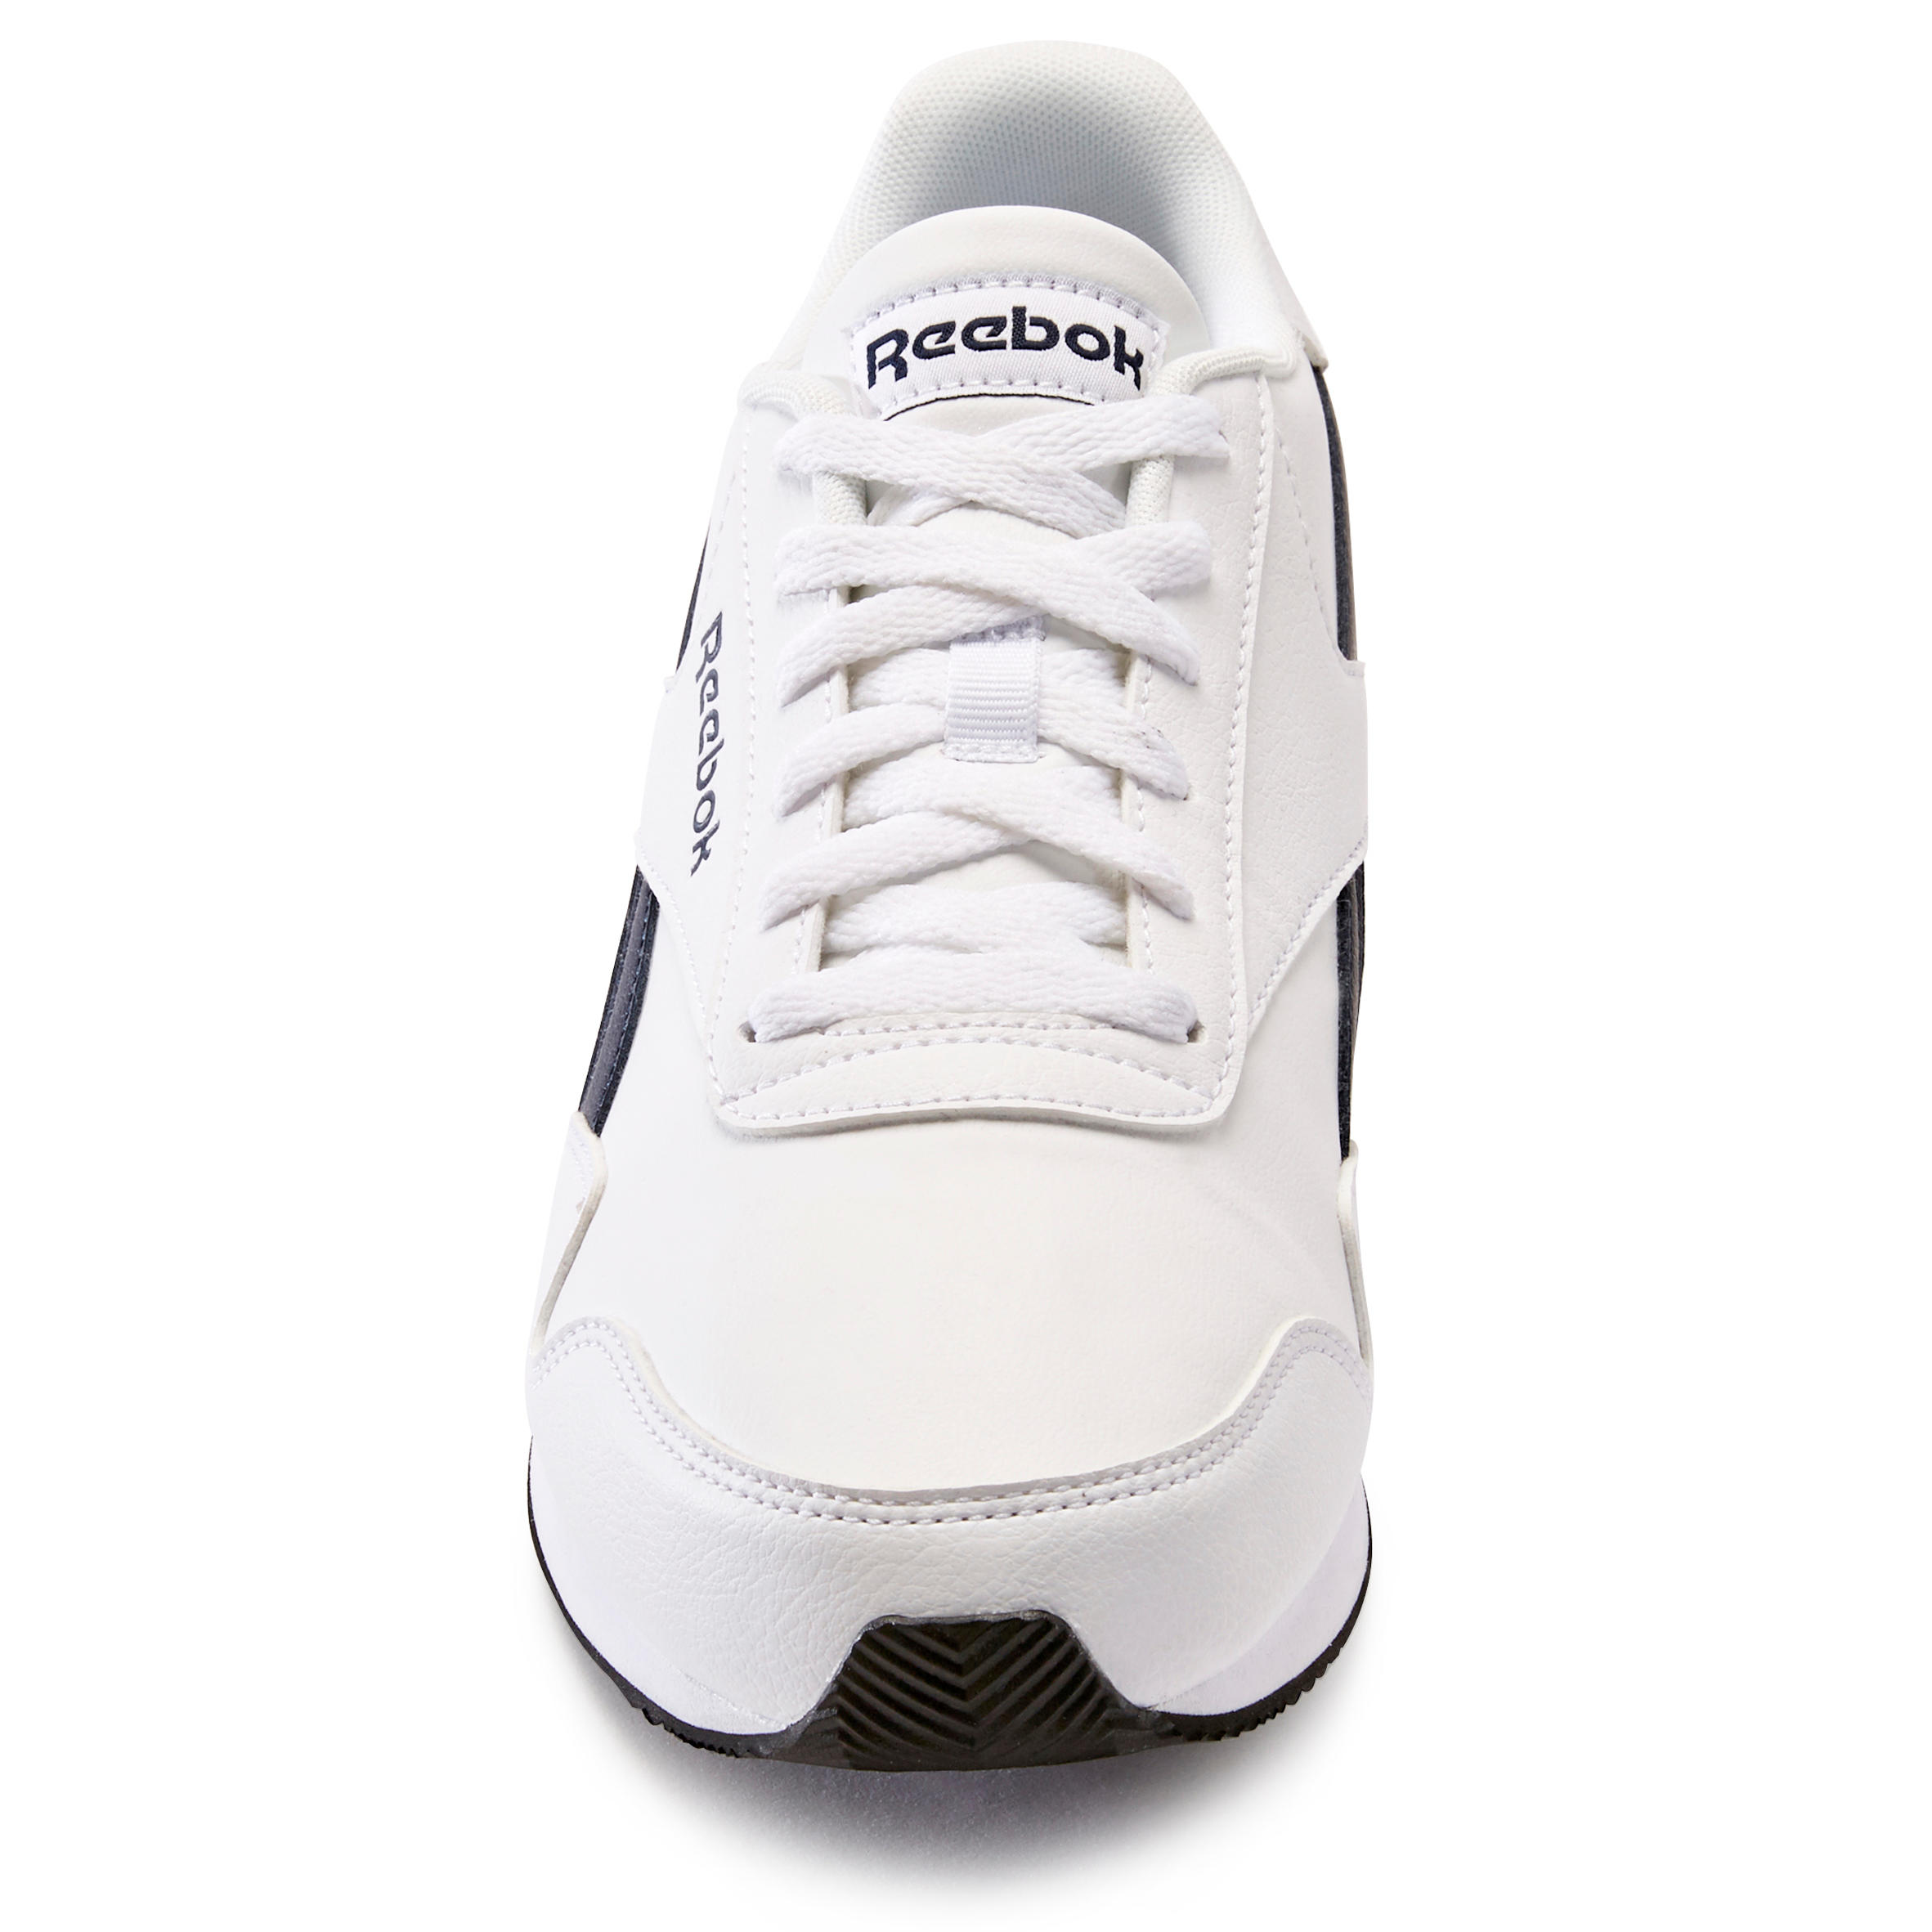 Men's Urban Walking Shoes Reebok Royal Classic - white 3/8